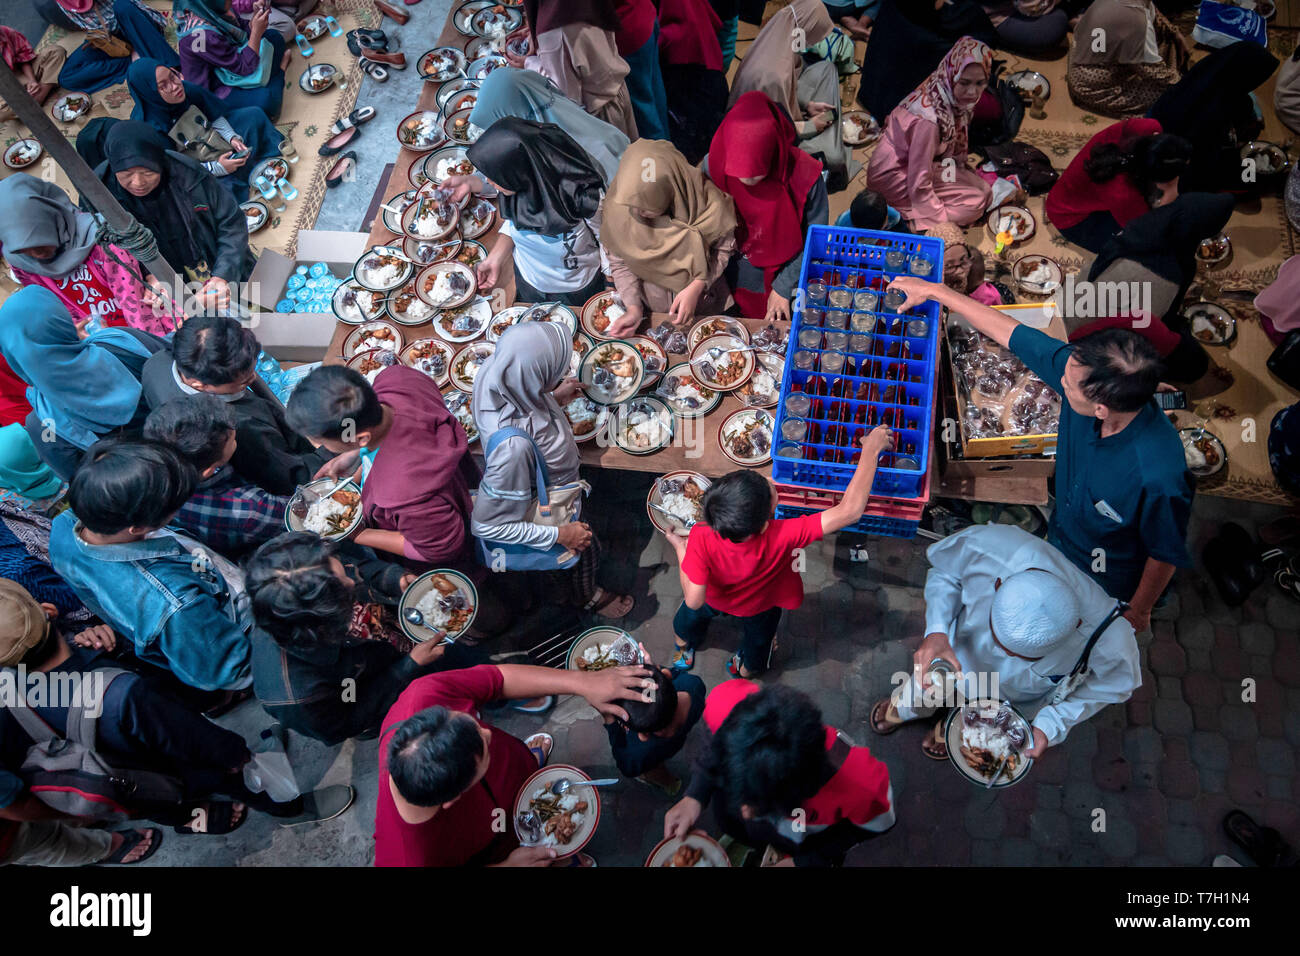 Musulmani indonesiani vede riuniti per iftar (fast-breaking) cena durante il mese sacro del Ramadan alla Moschea Jogokariyan in Yogyakarta, Indonesia. I musulmani di tutto il mondo celebrano il mese sacro del Ramadan pregando durante la notte e di astenersi dal mangiare e dal bere durante il periodo compreso tra gli orari di alba e tramonto. Foto Stock